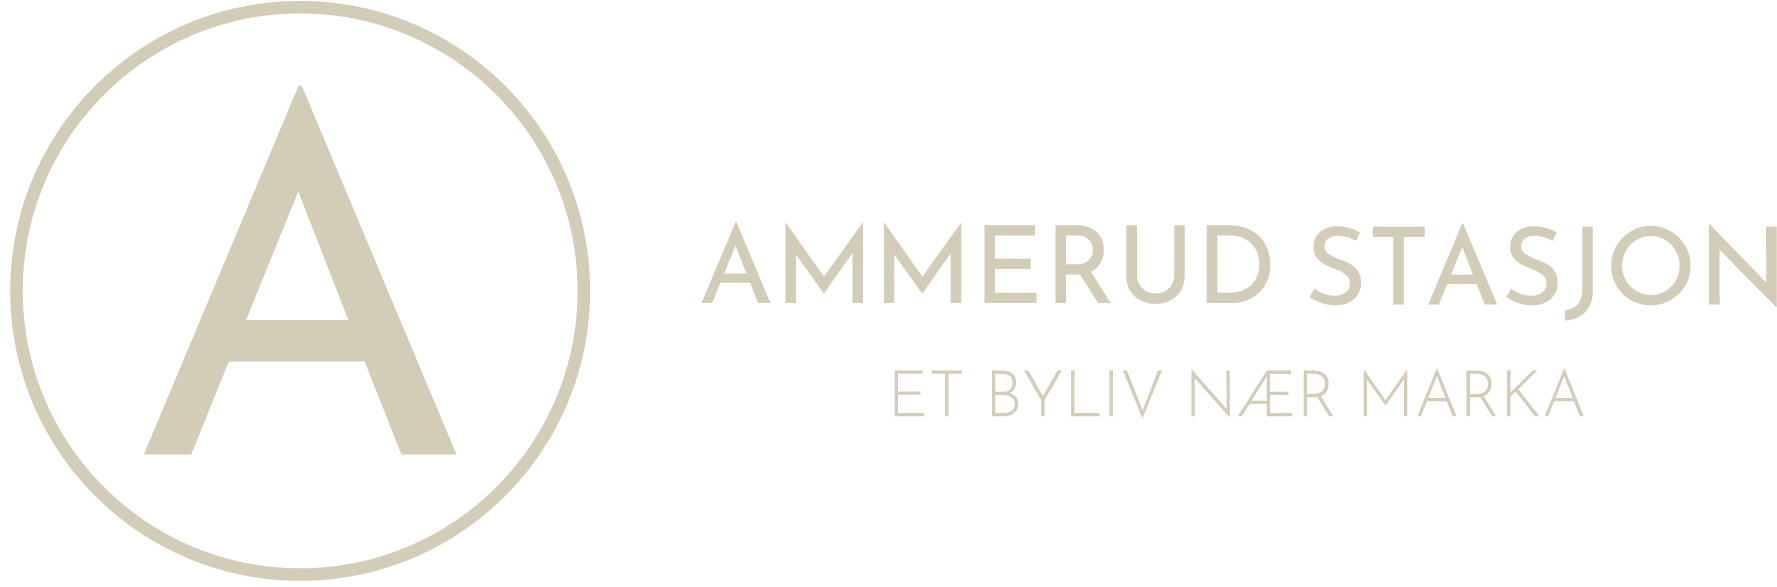 Logoen for Ammerud Stasjon.